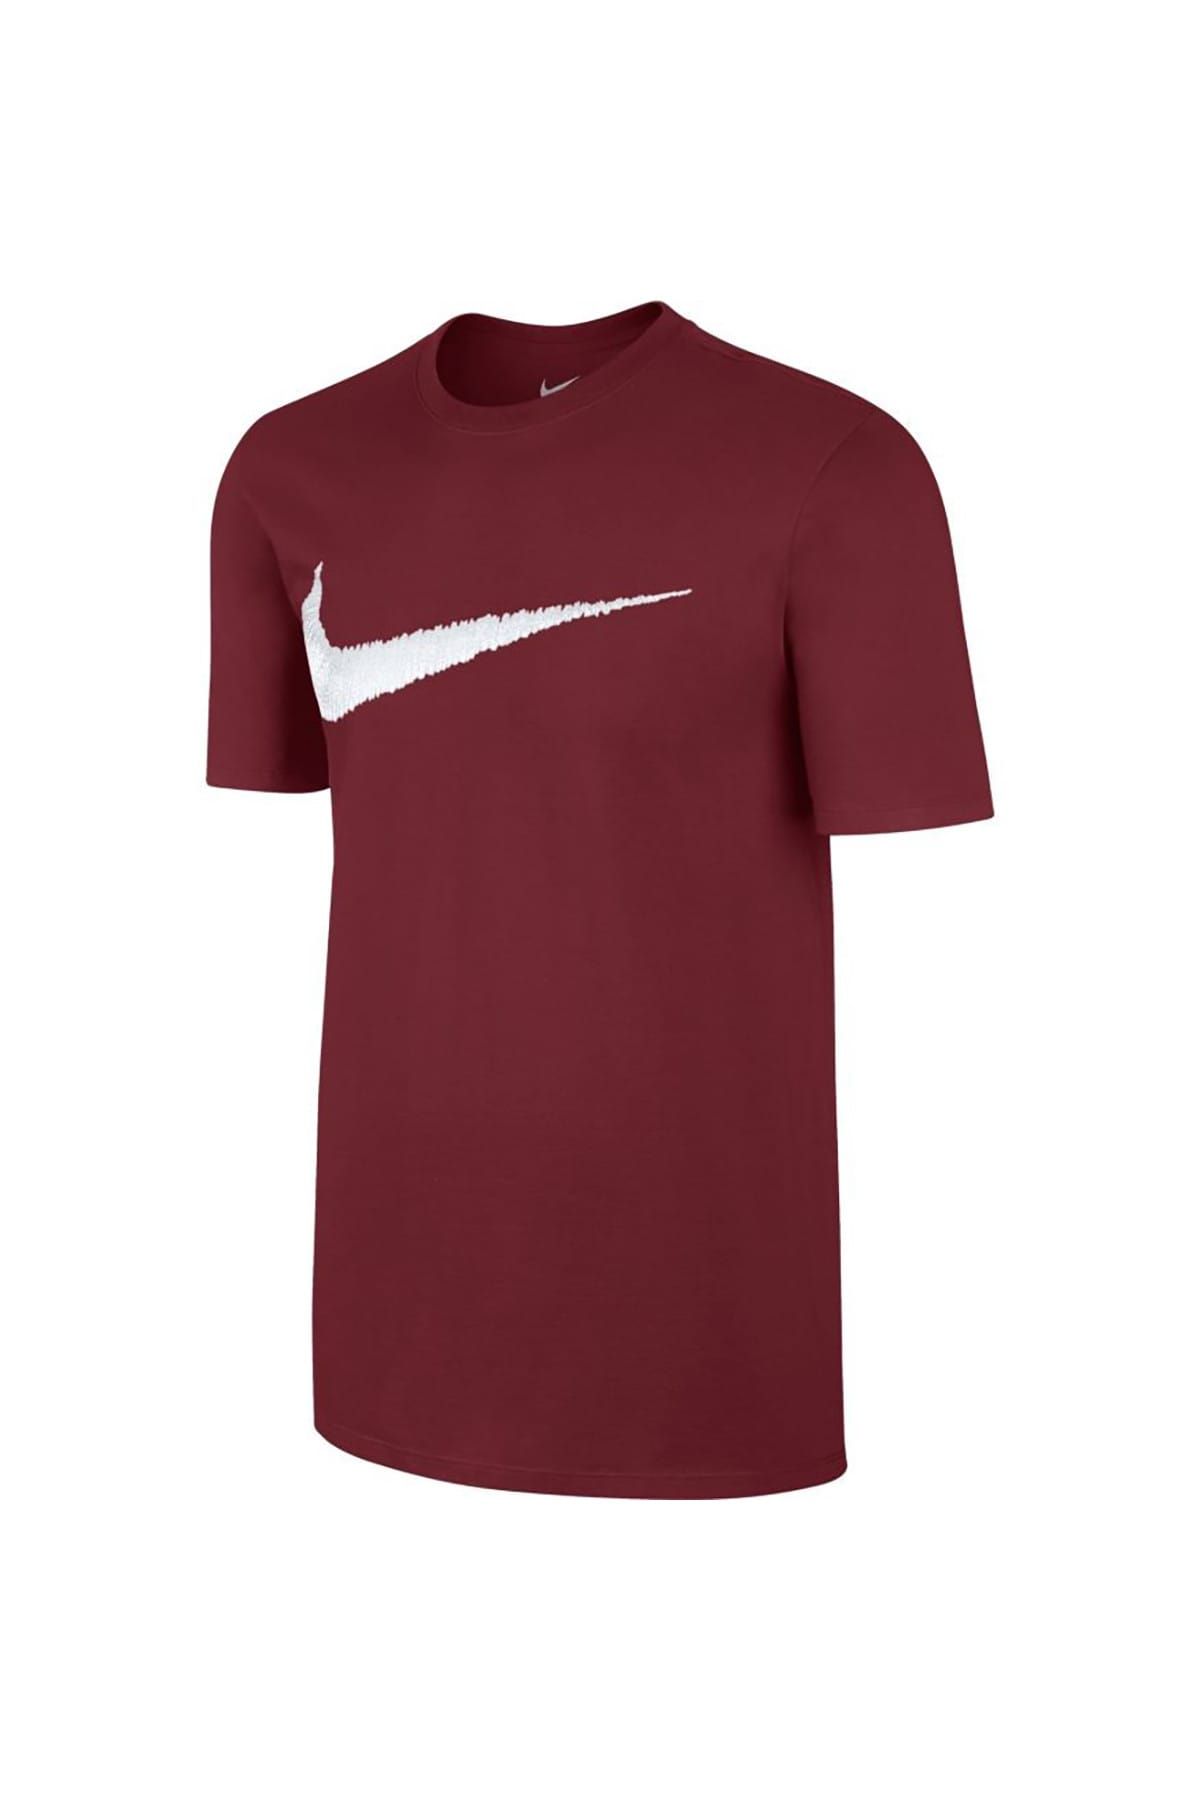 Nike Erkek T-Shirt Sportswear Swoosh - 707456-678